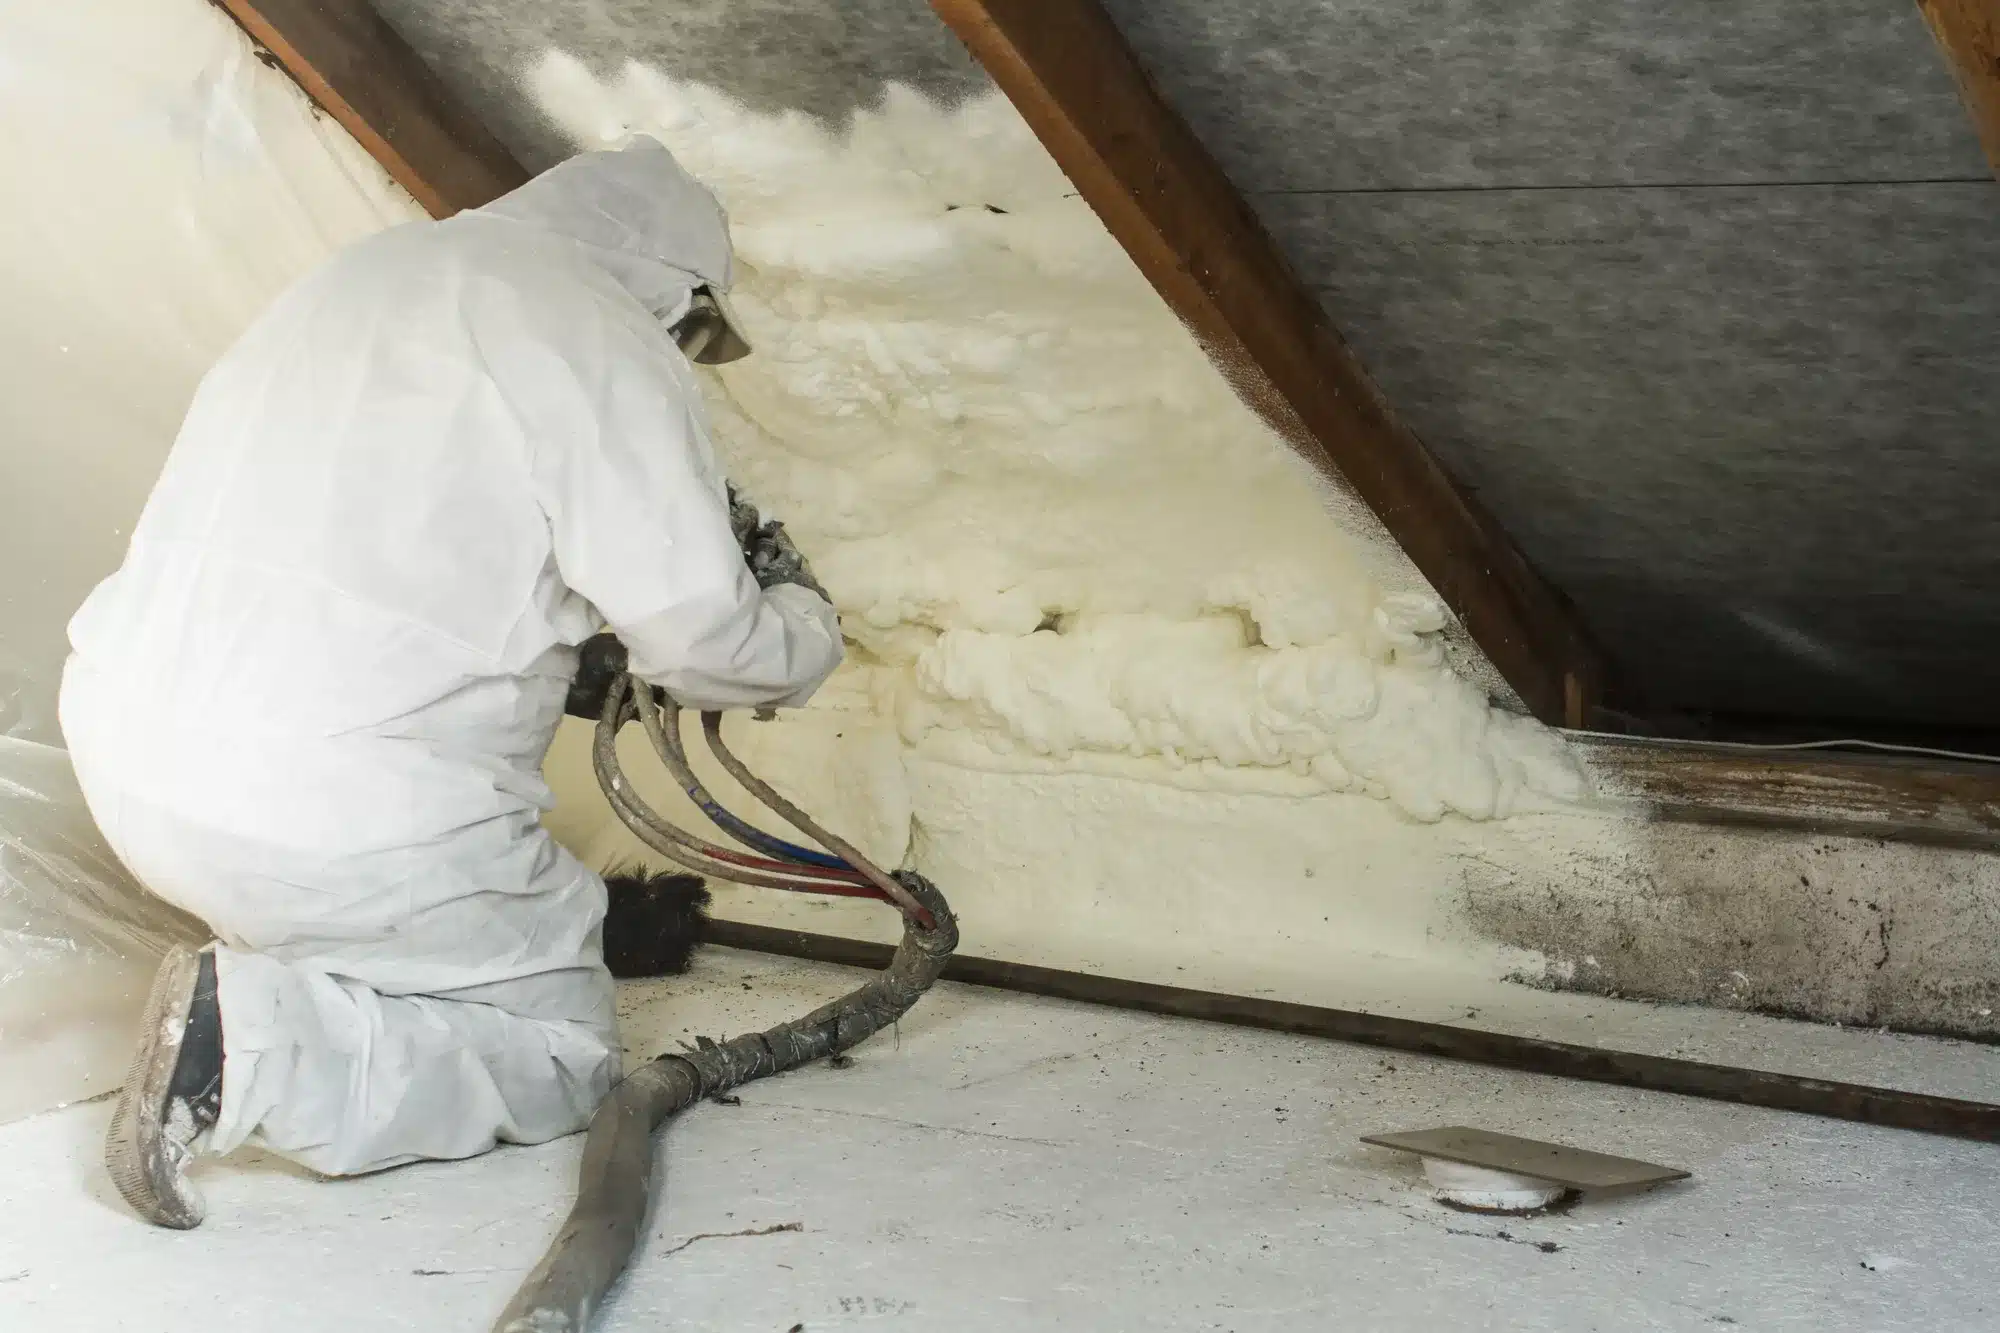 Spray Foam Insulation in a residential attic